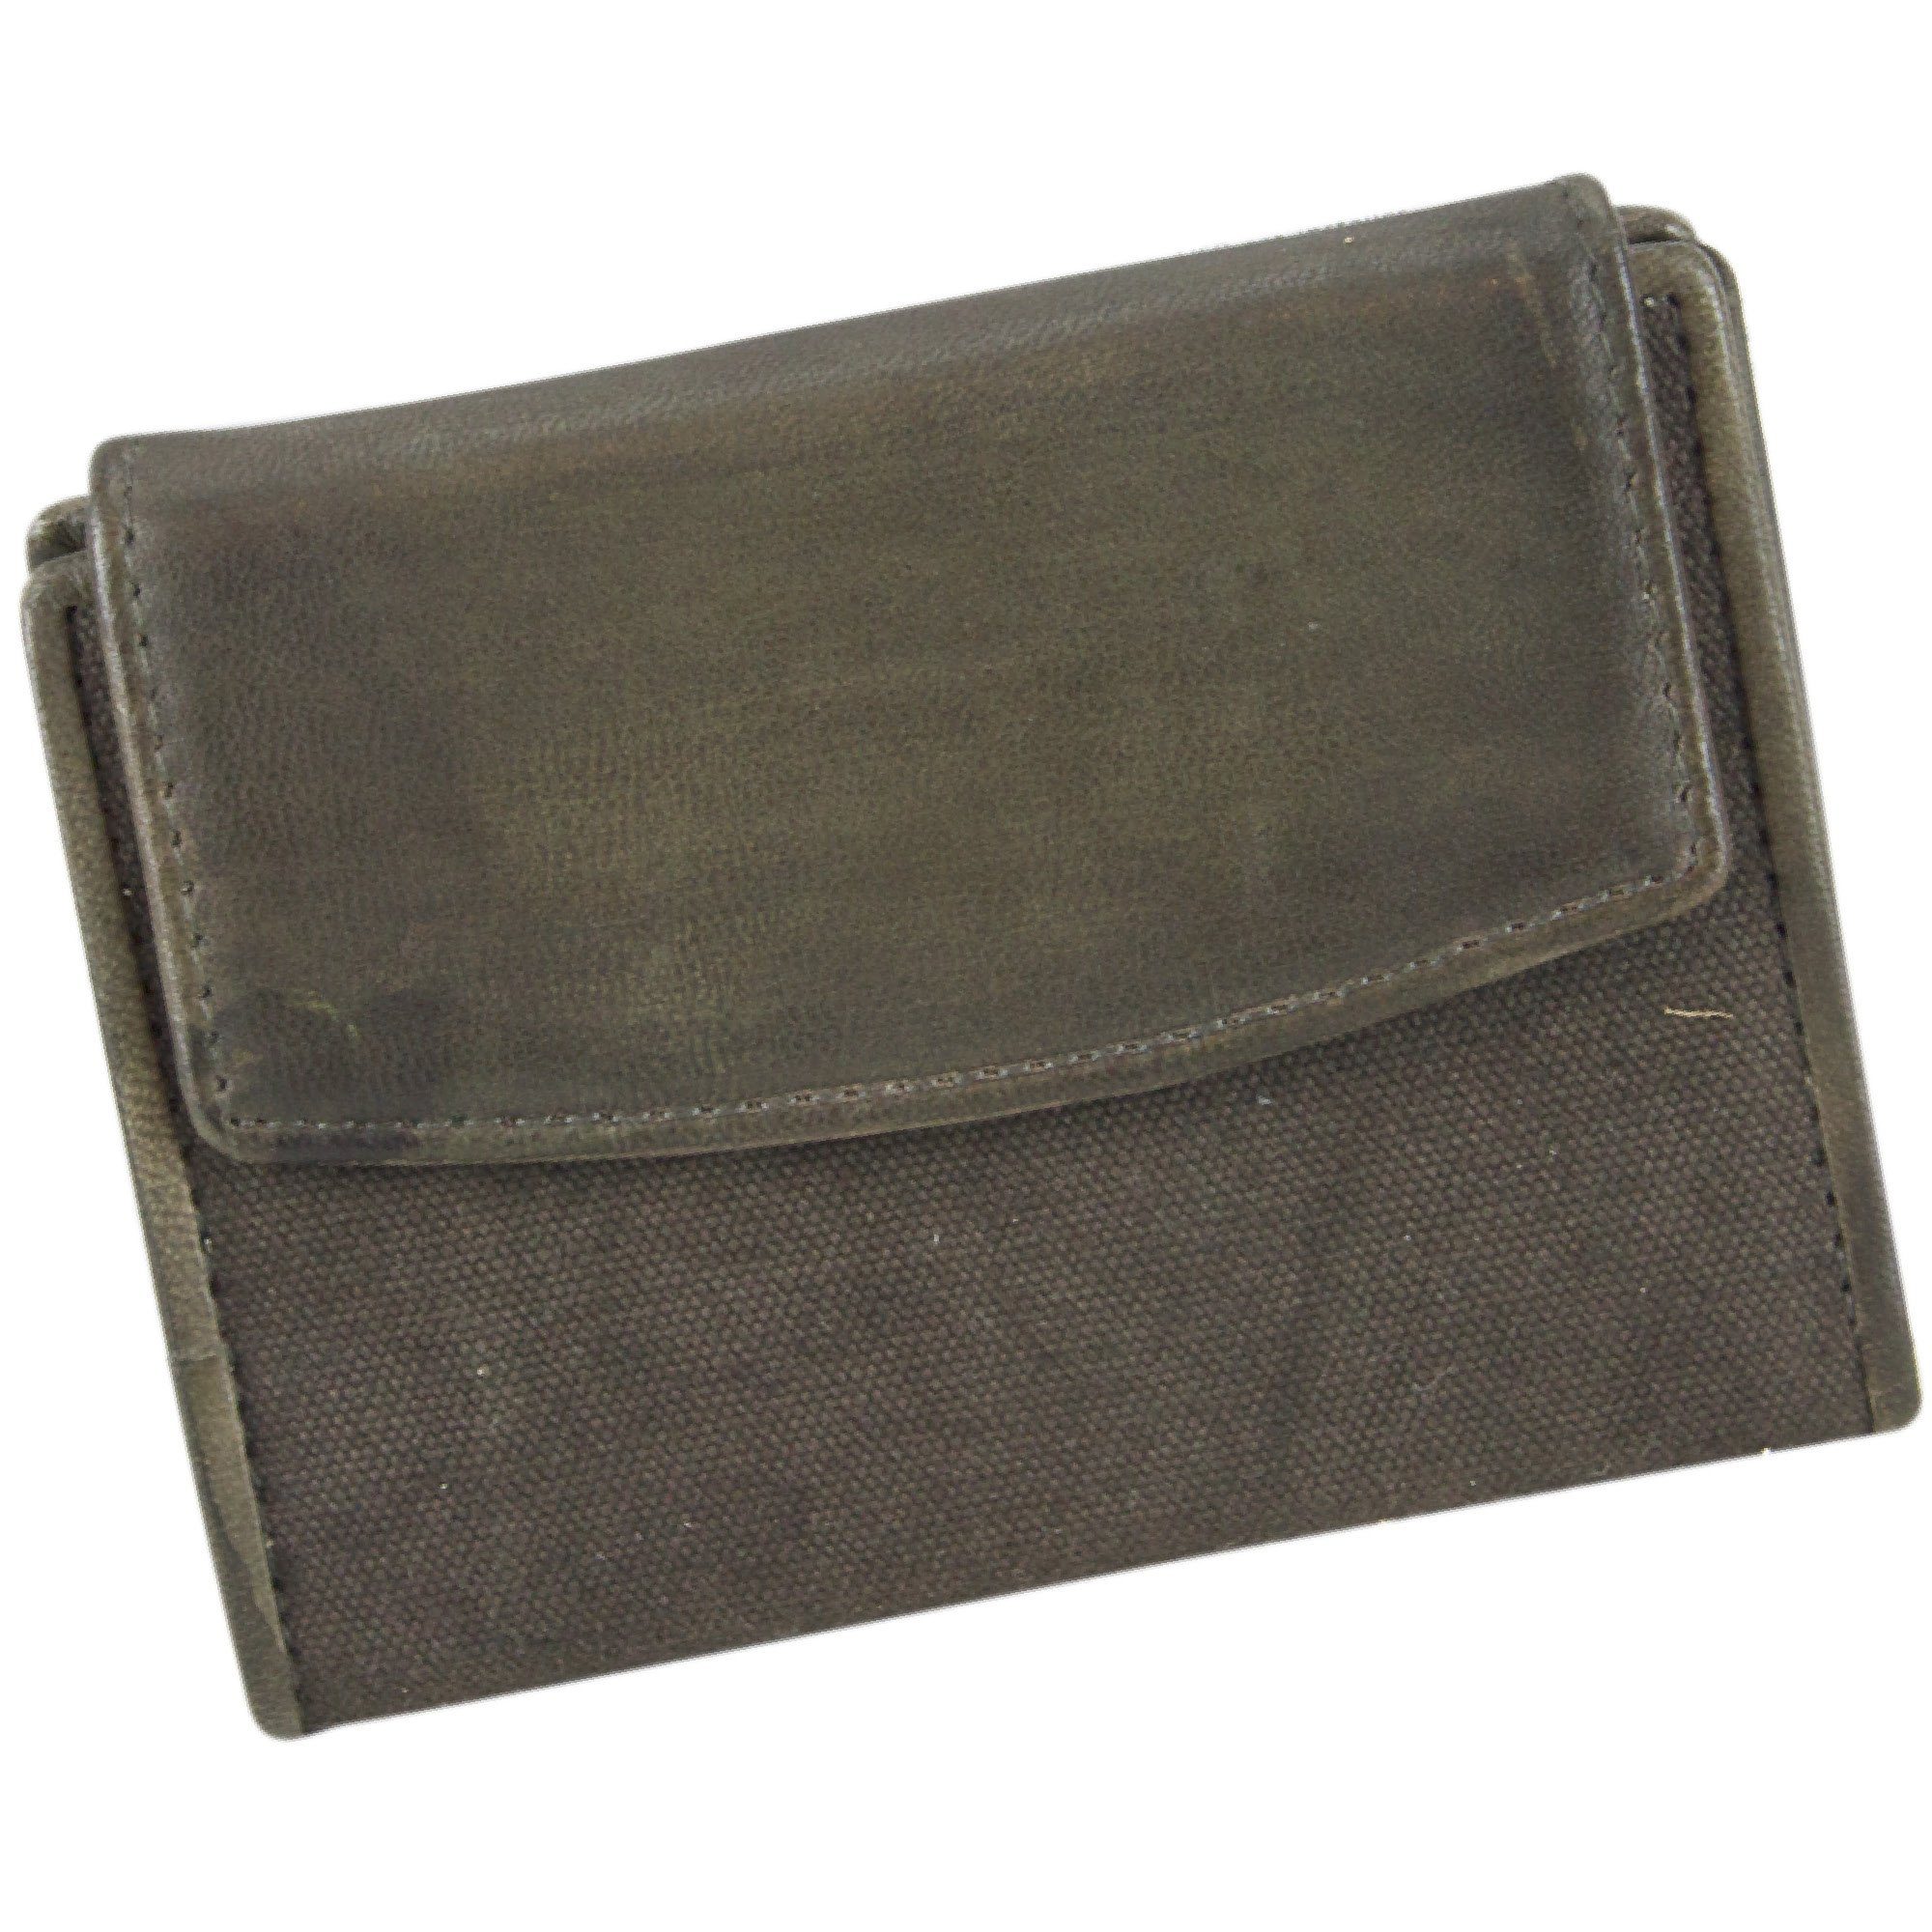 Sunsa Geldbörse 81121 Unisex Vintage Leder Geldbeutel Brieftasche Portemonnaie, echt Leder, Unisex, mit RFID Schutz, zeitlos, Canvas, Vintage Style olive